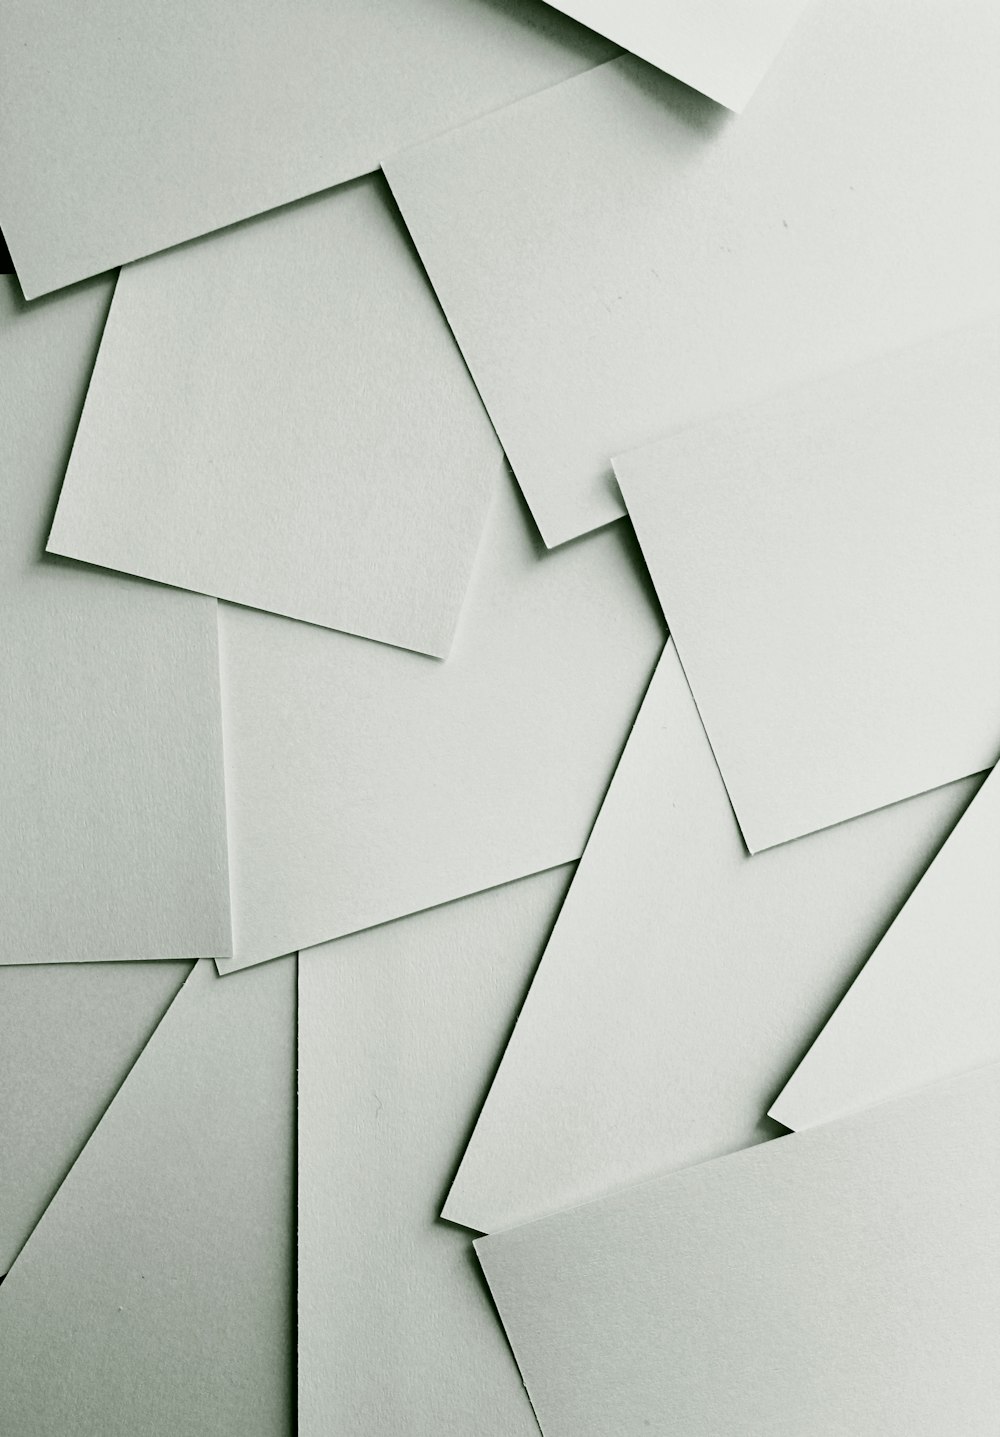 Des feuilles de papier blanc éparpillées recouvrant tout le cadre